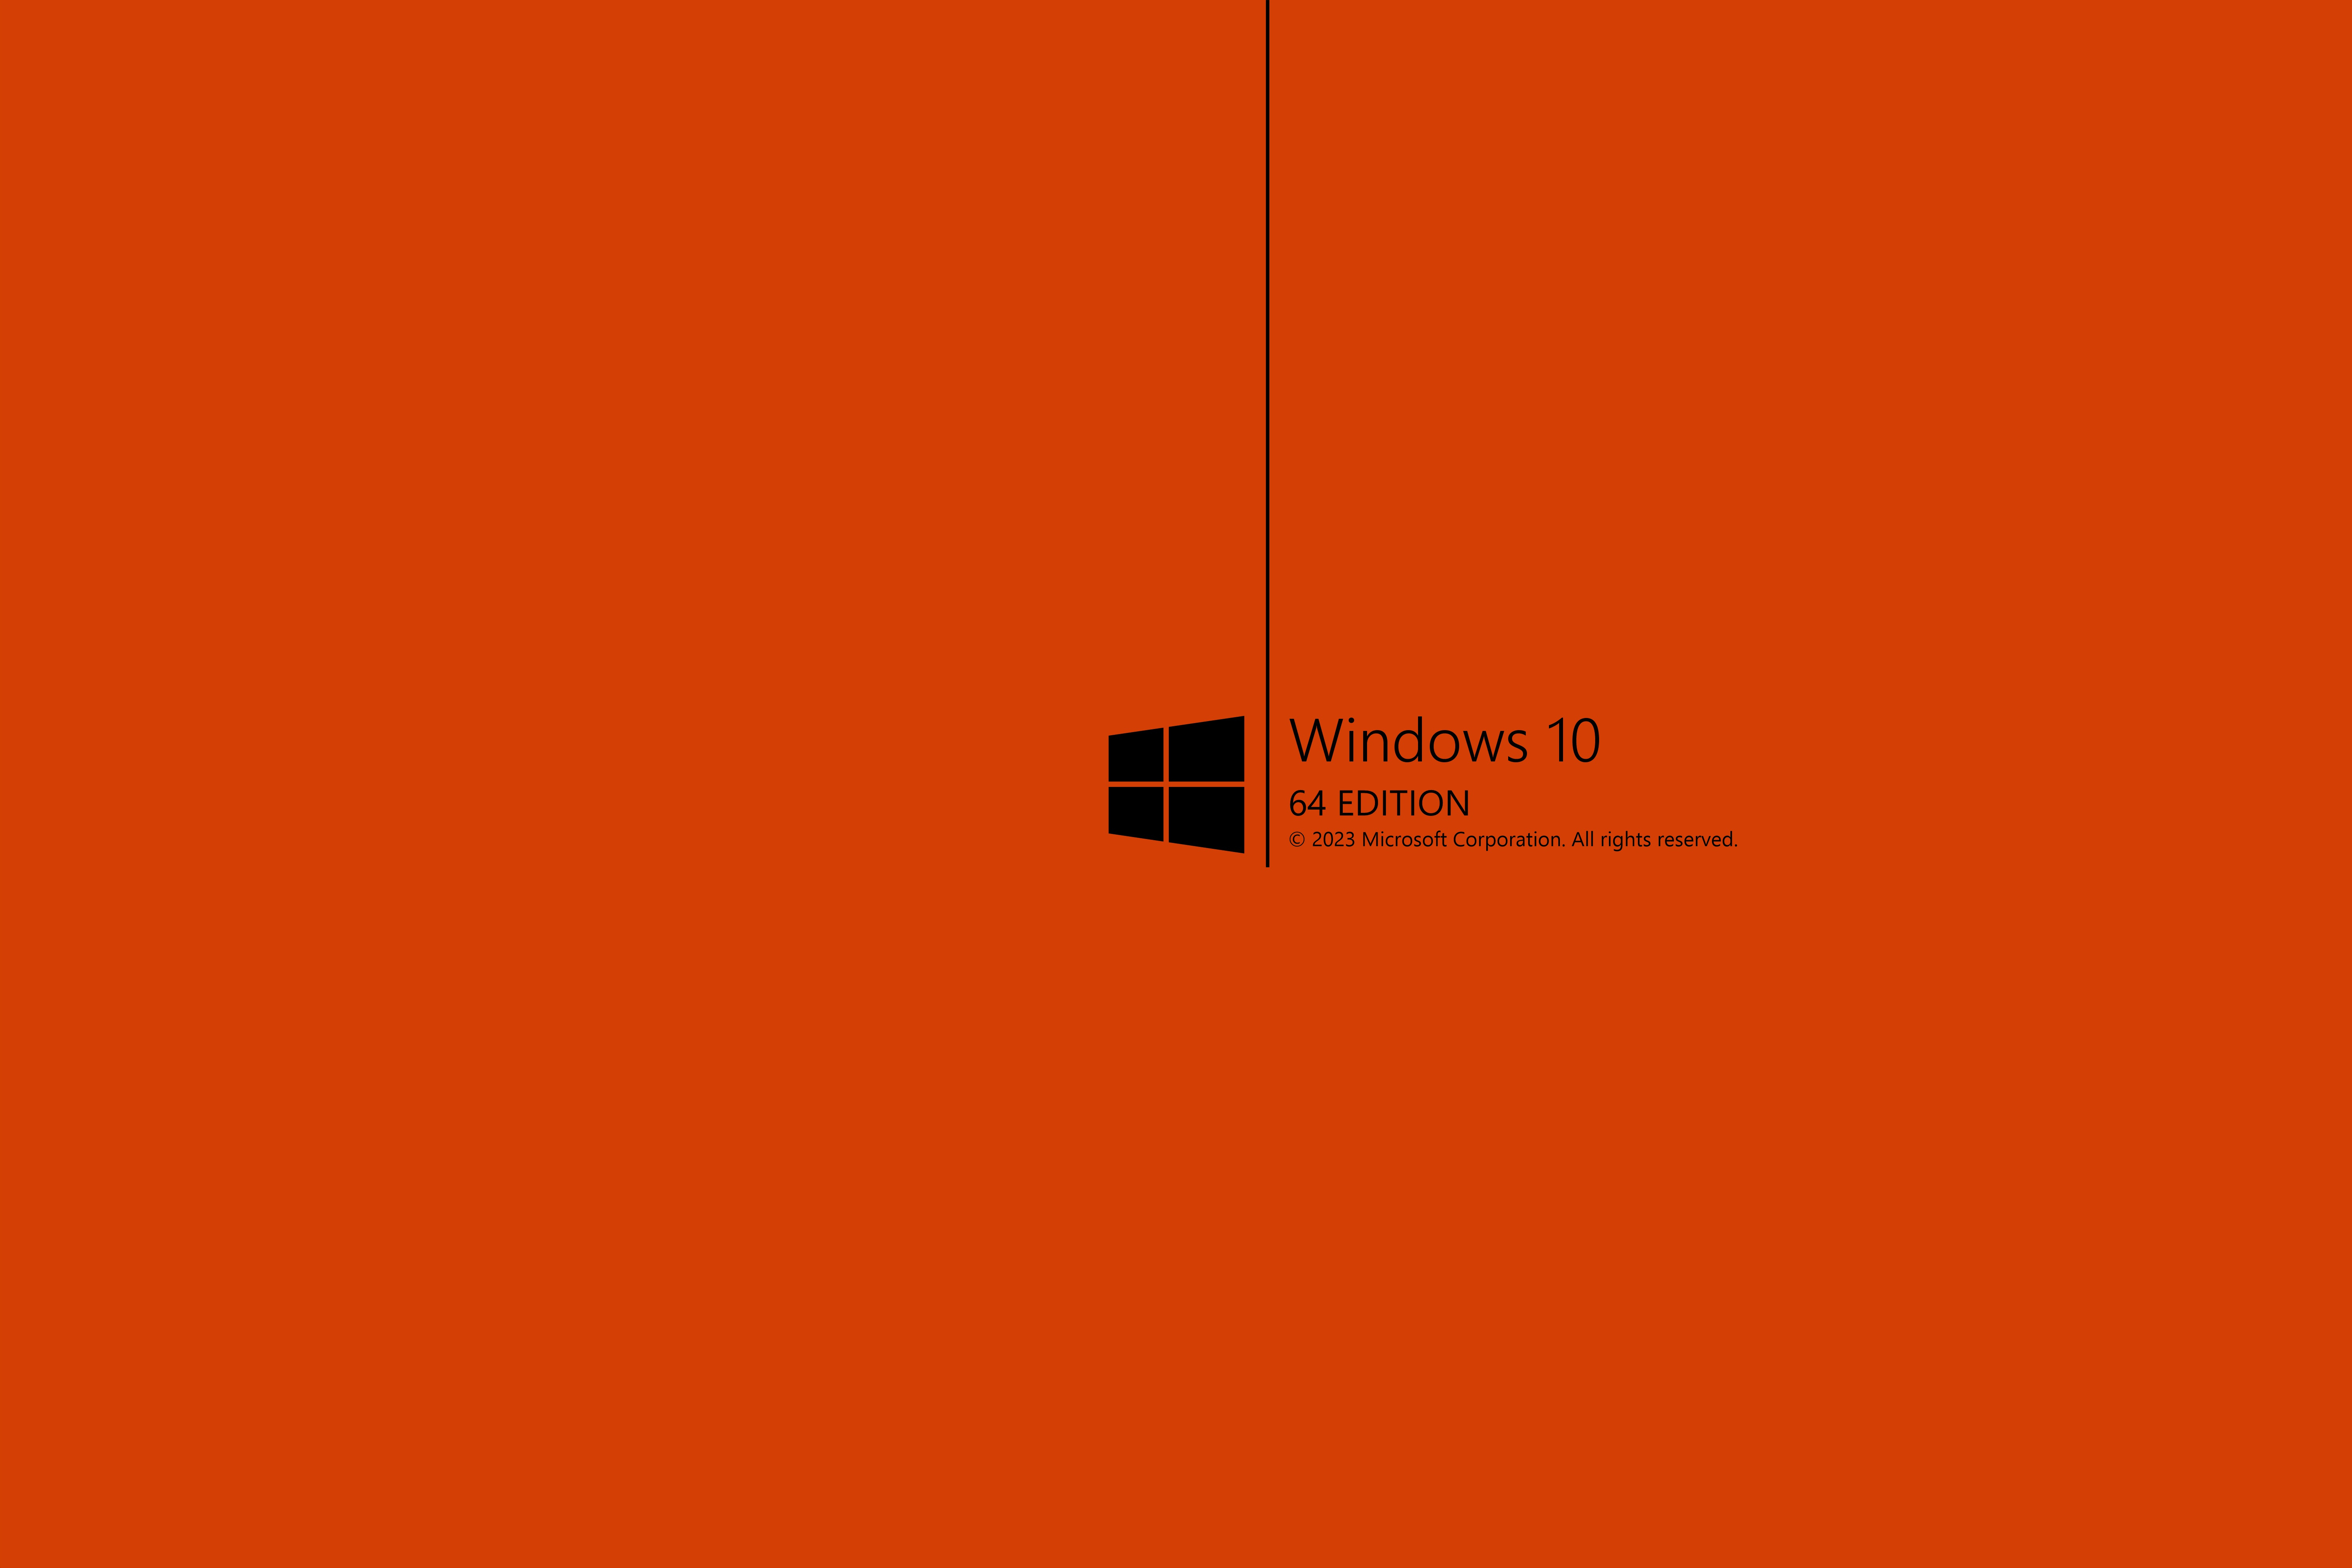 Picture Windows Logo Emblem Orange Computers 6001x4001